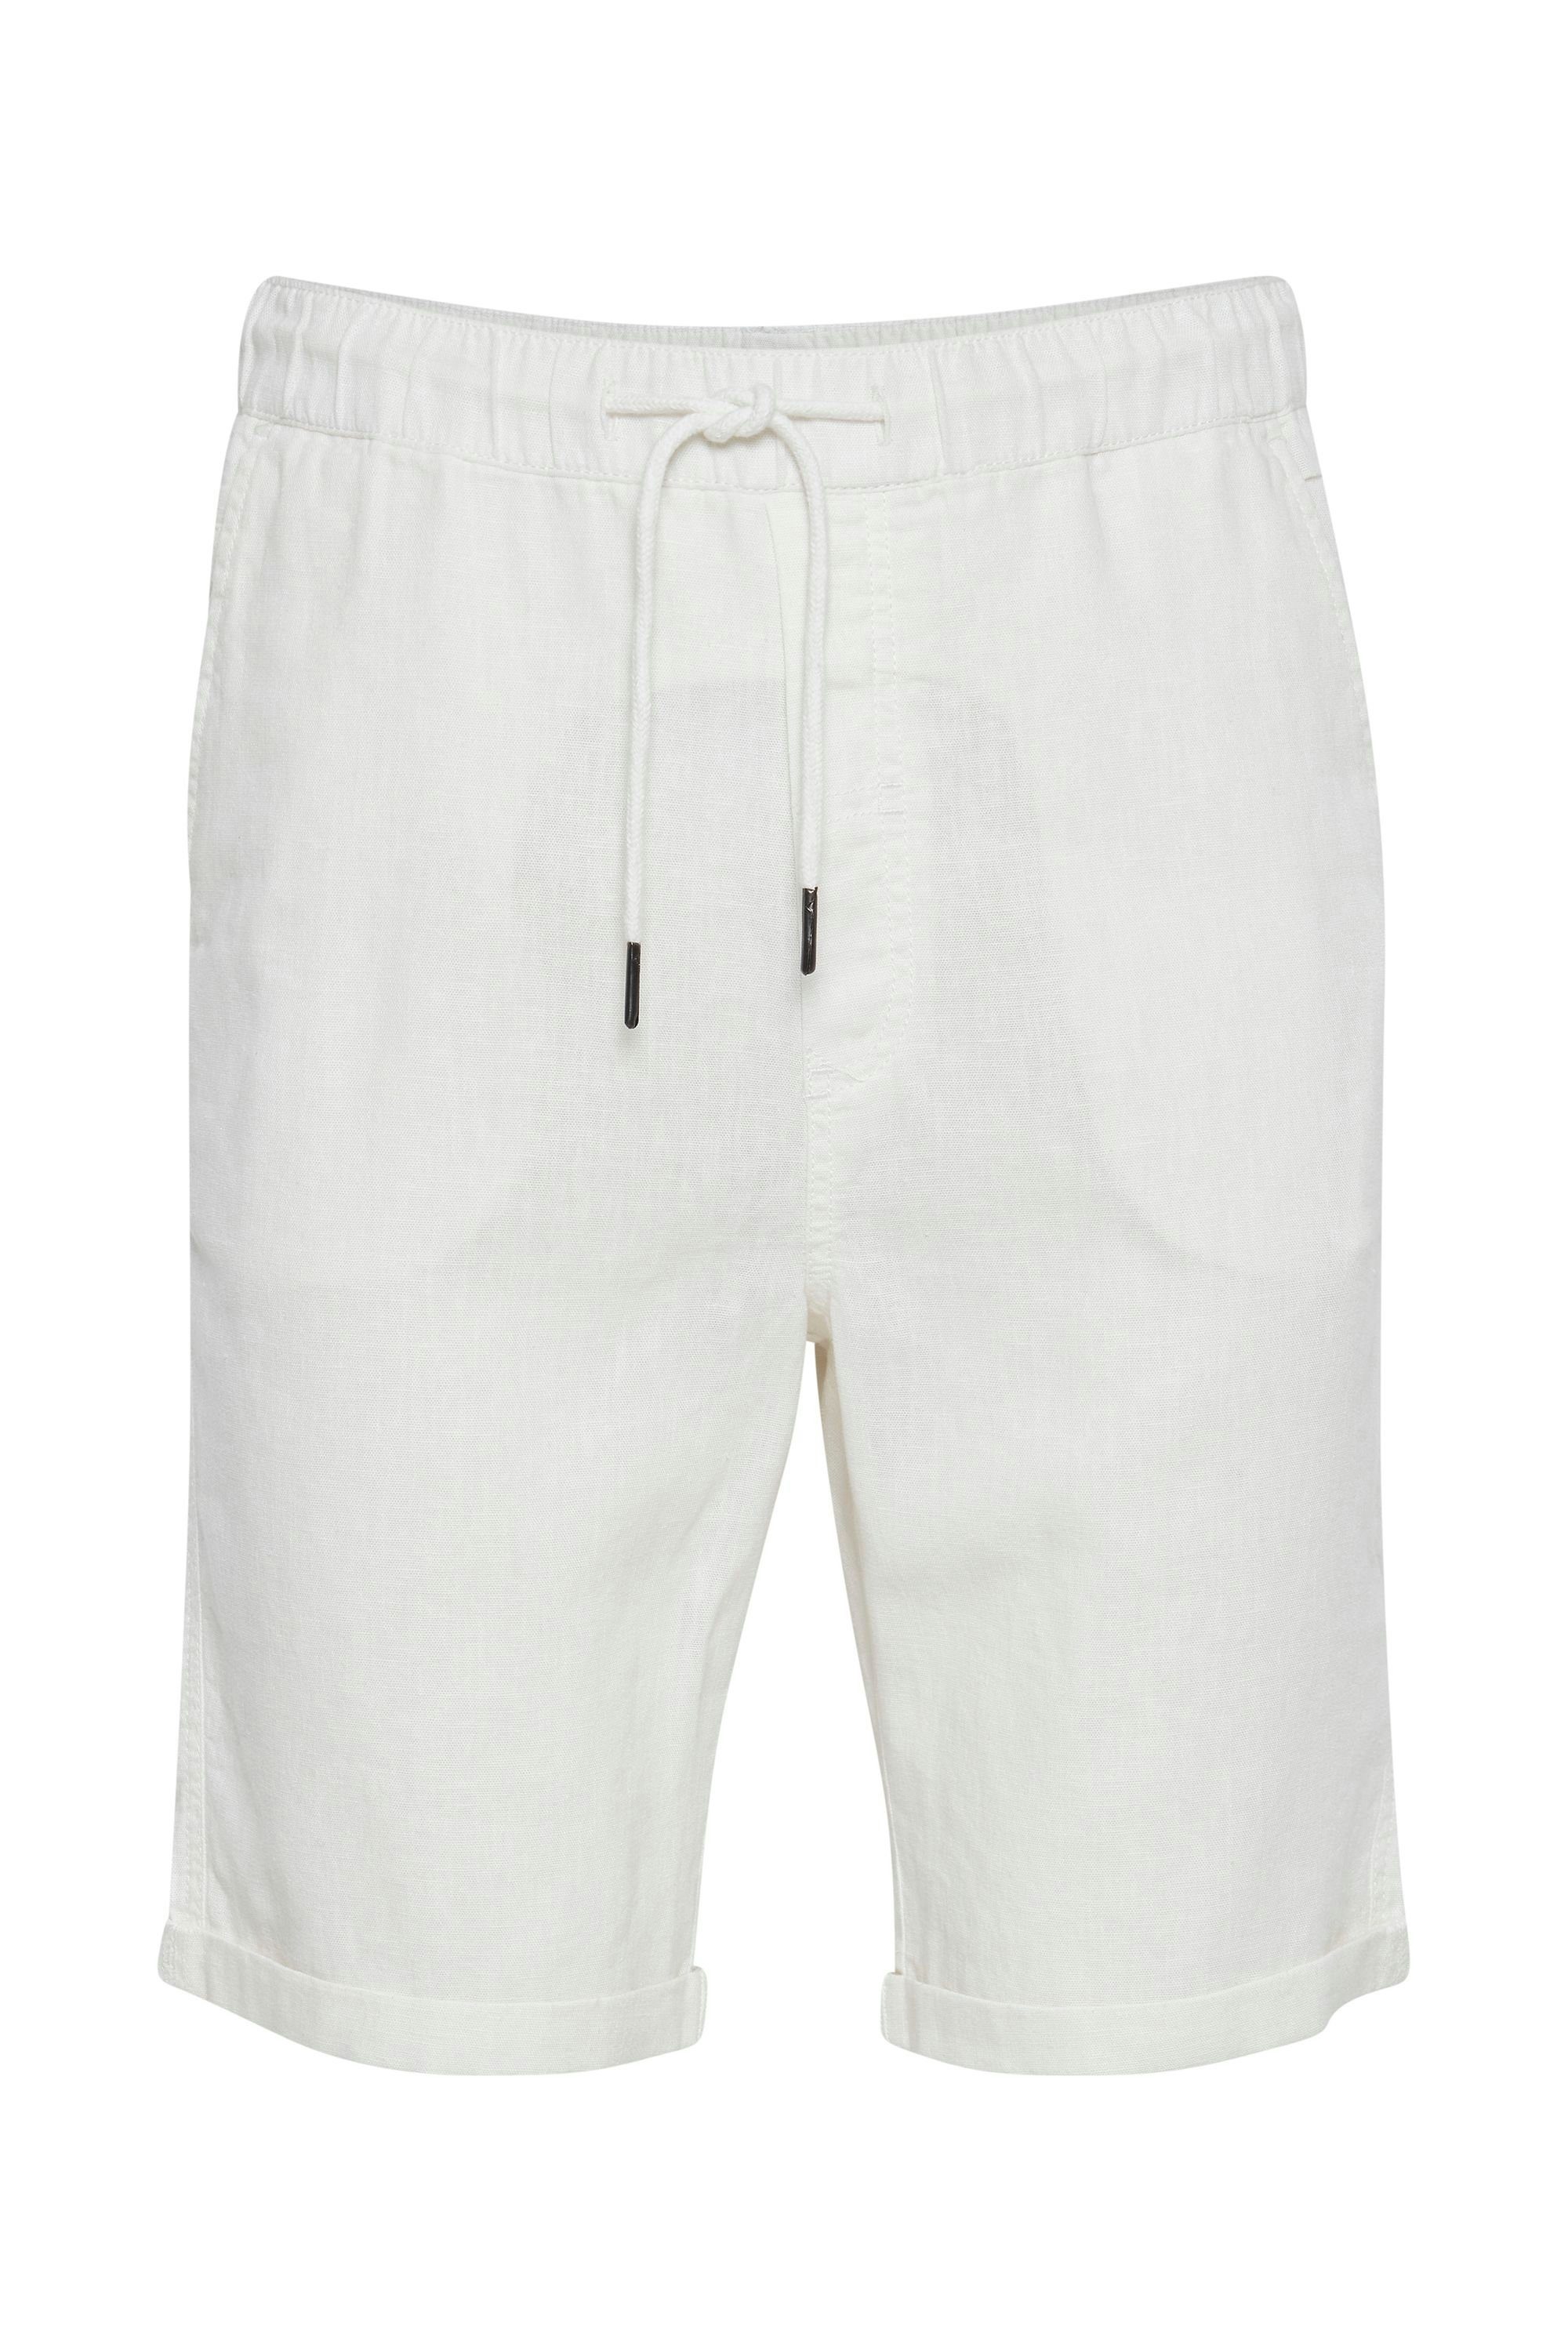 Leinen 21105213 Linen Shorts SDTruc WHITE kurze Shorts OFF (114201) !Solid - aus Hose